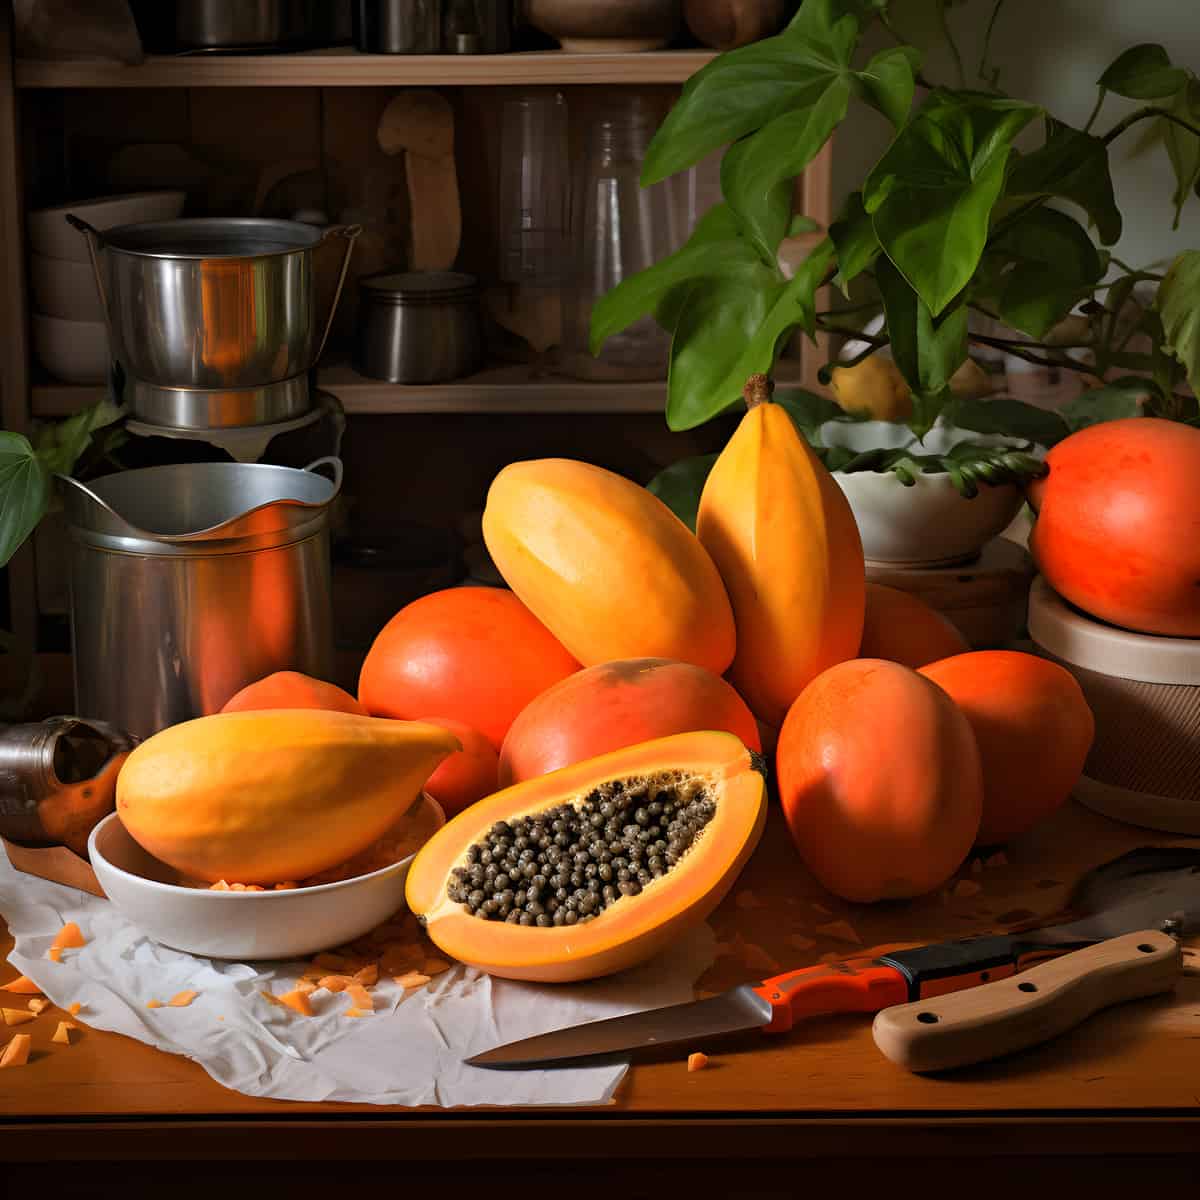 Papaya on a kitchen counter